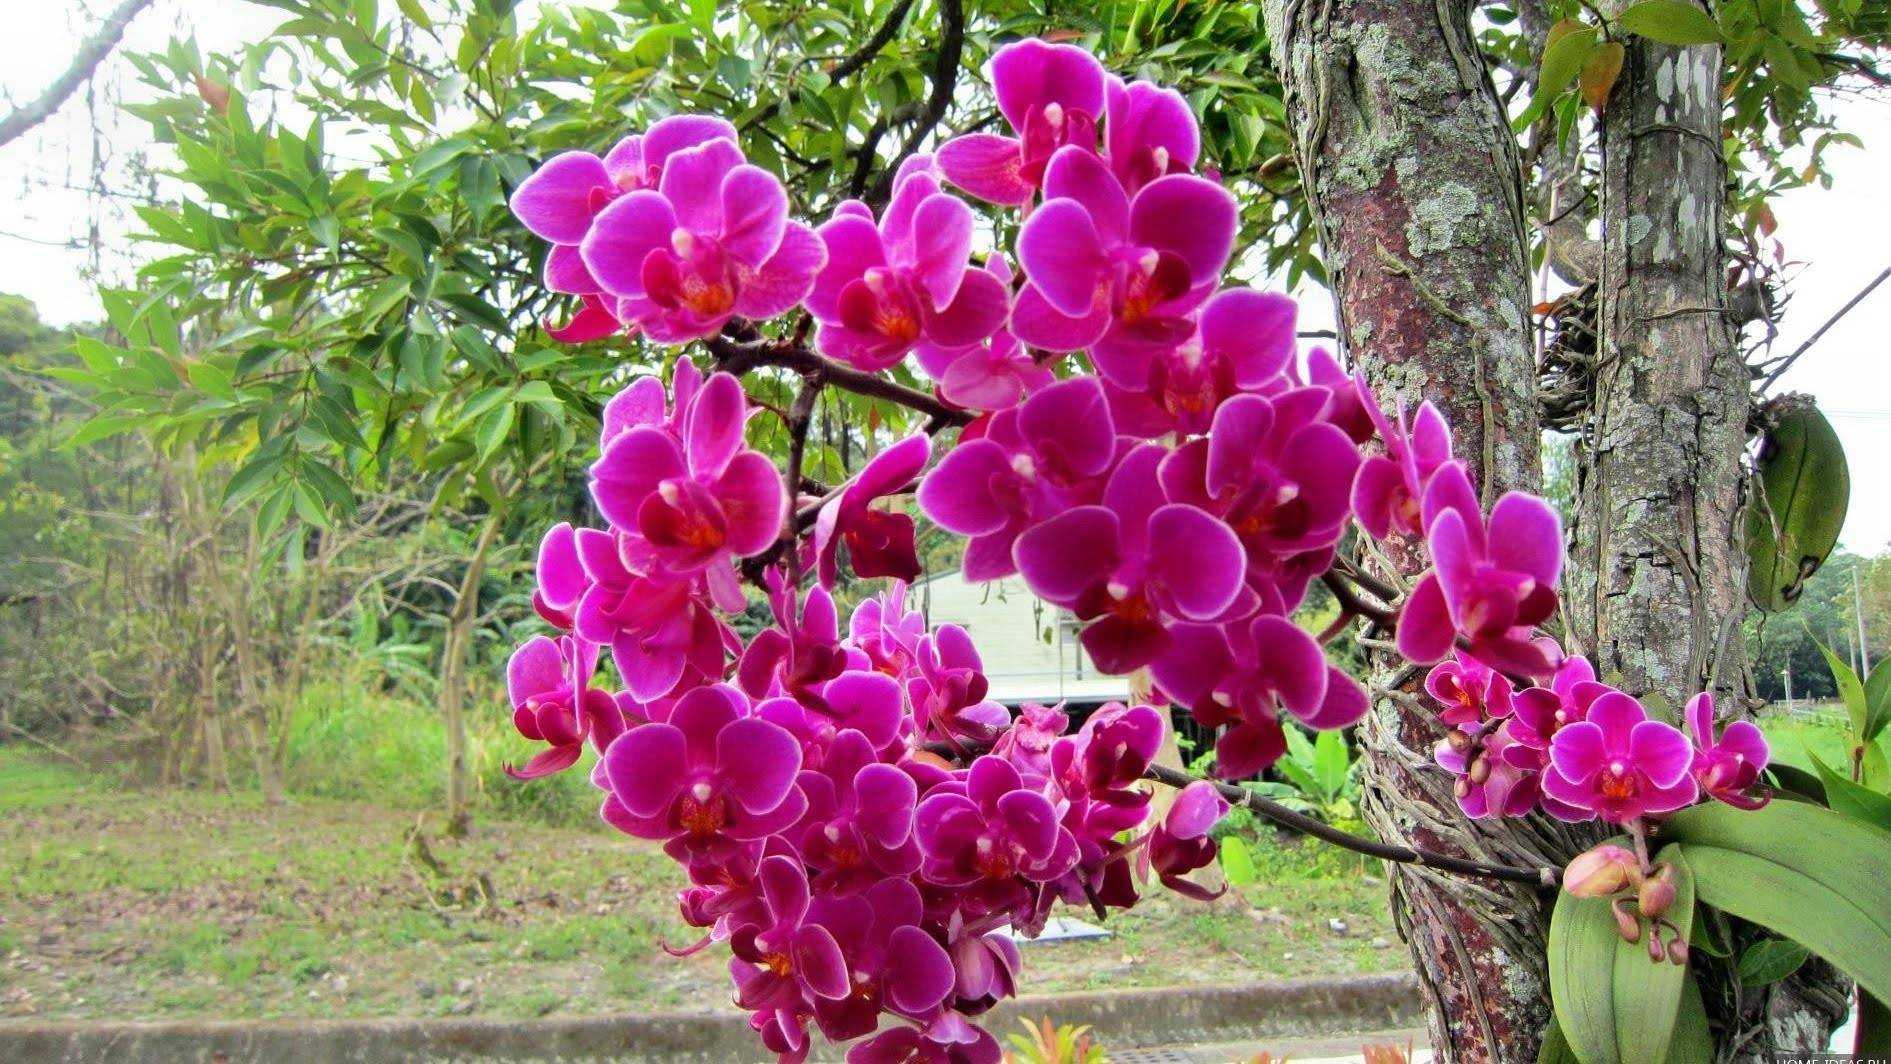 Орхидея в природе — как и где растут орхидеи в дикой природе Фаленопсис в естественной среде, на деревьях Сравнение дикого и домашнего растения Когда и как растение впервые было завезено в Европу